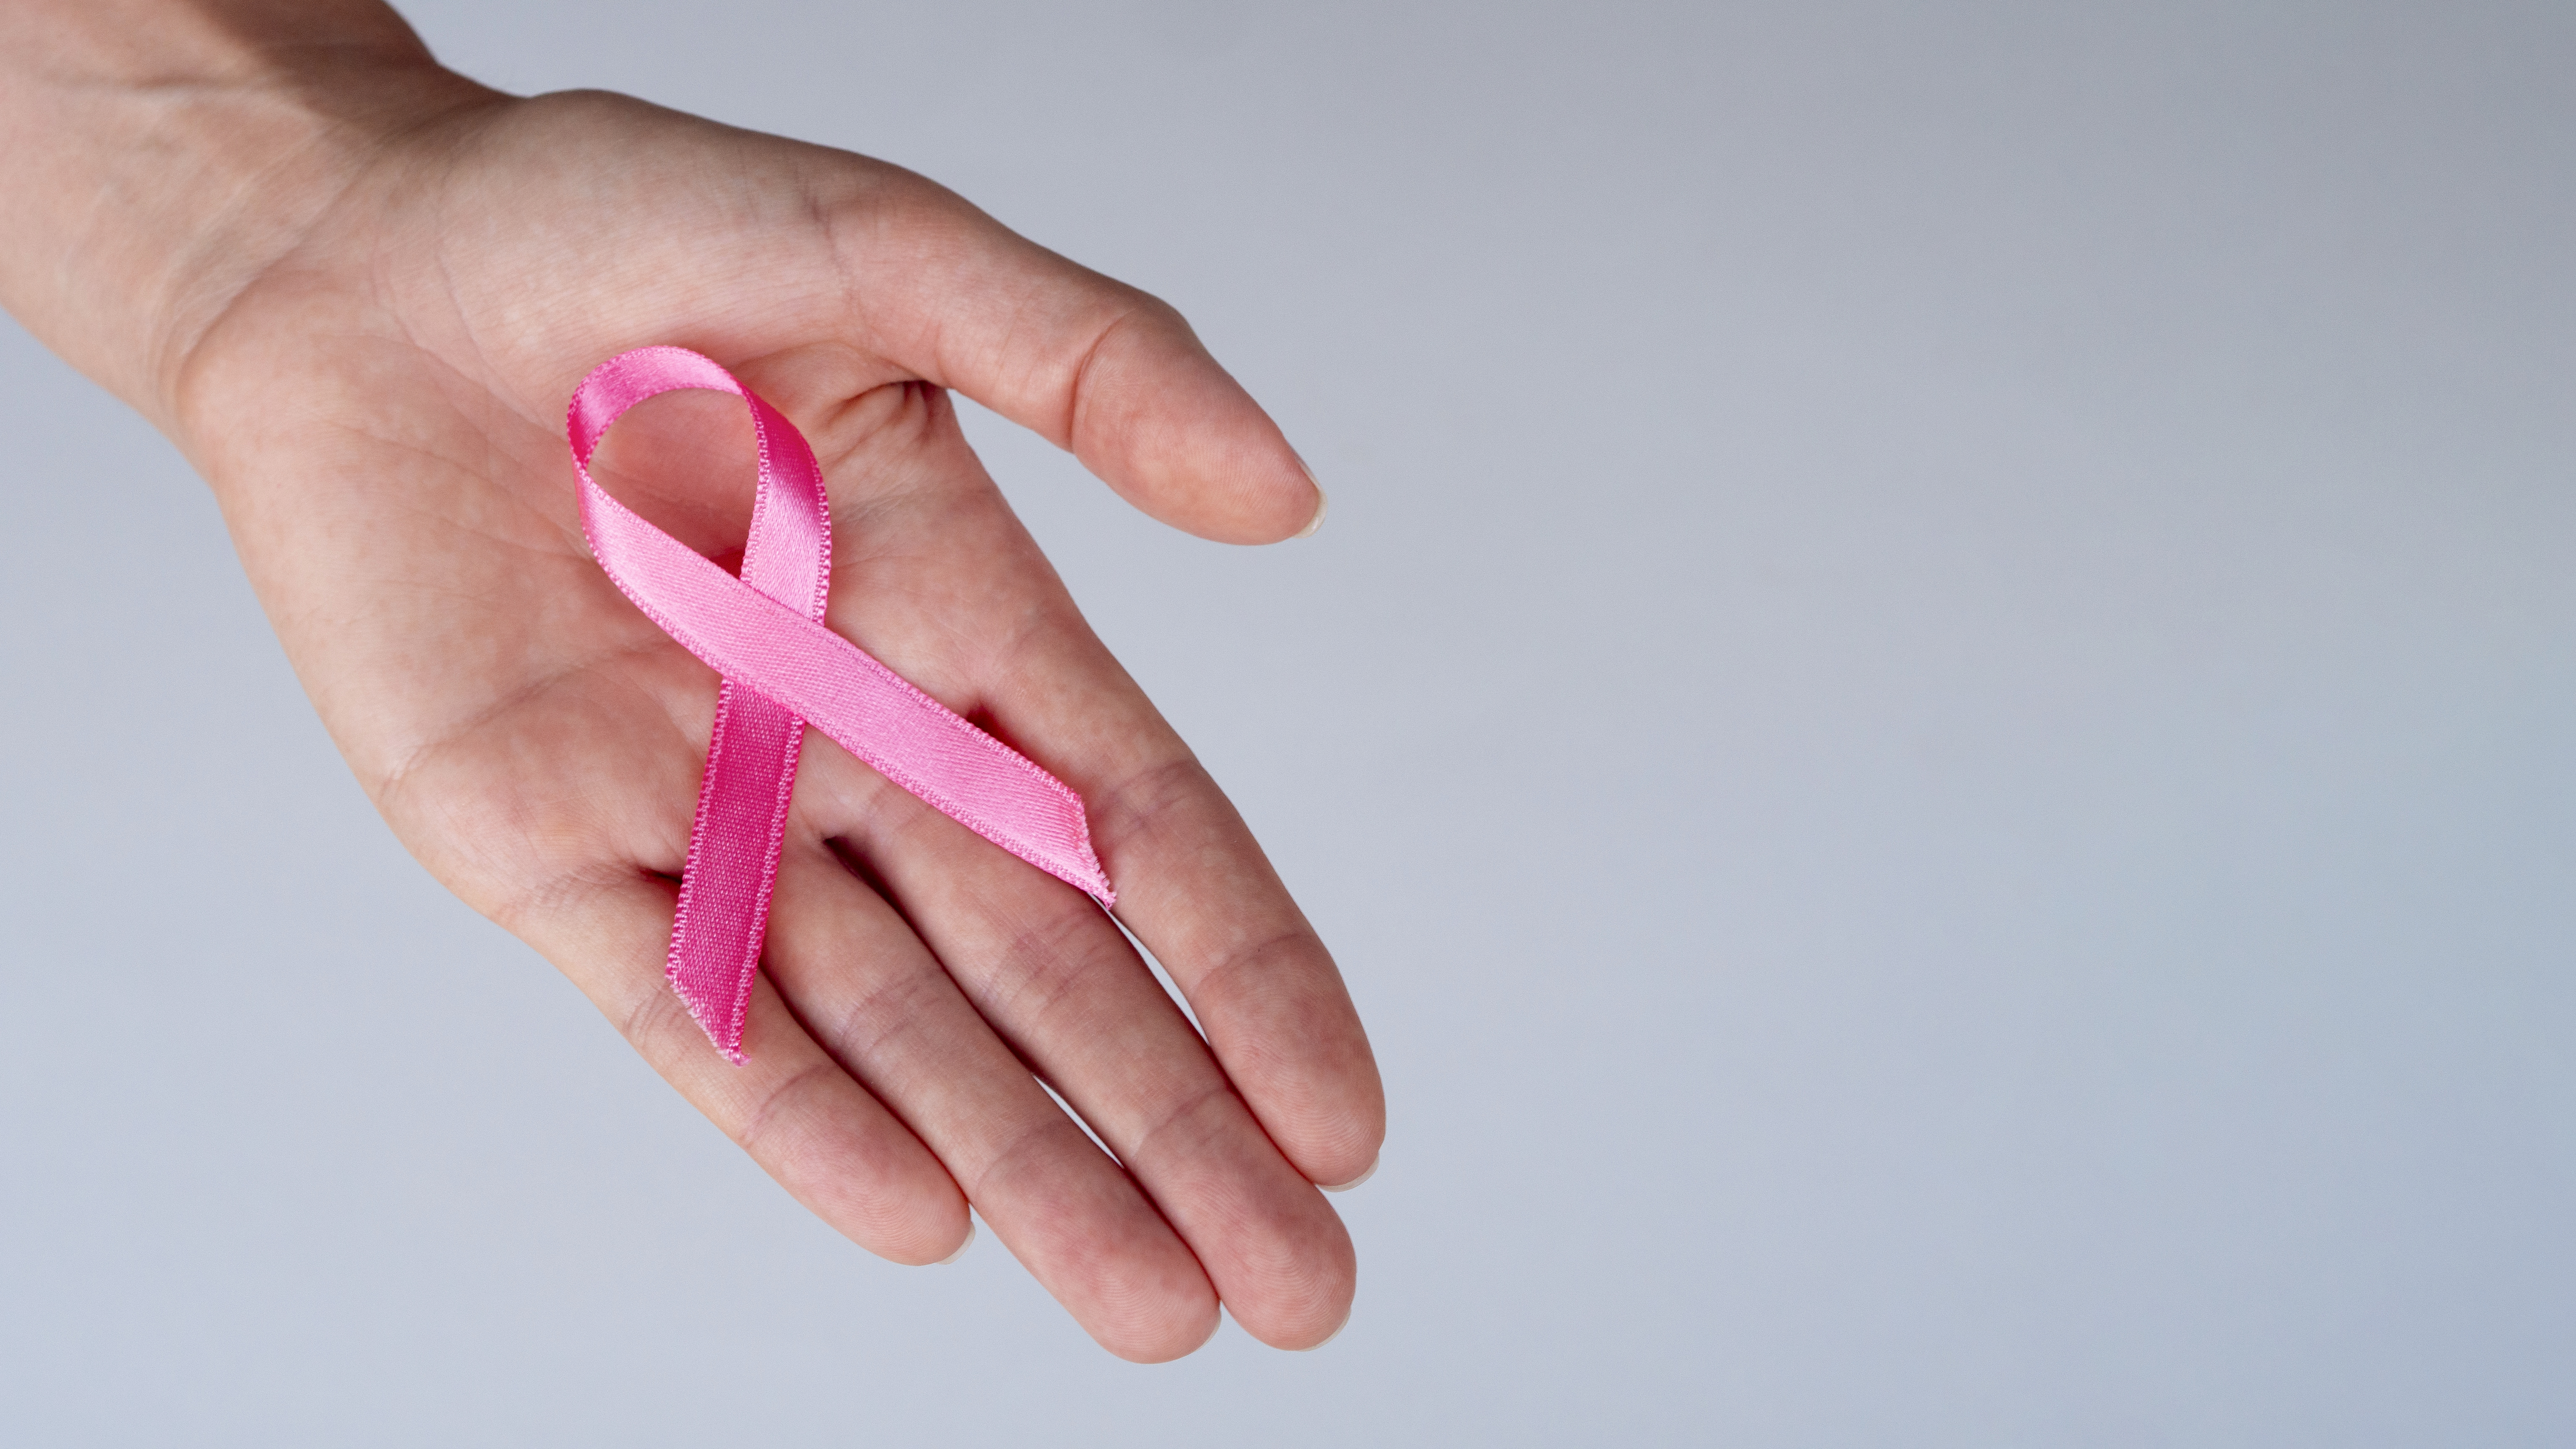 Outubro Rosa: 10 informações sobre a mamografia que toda mulher precisa saber